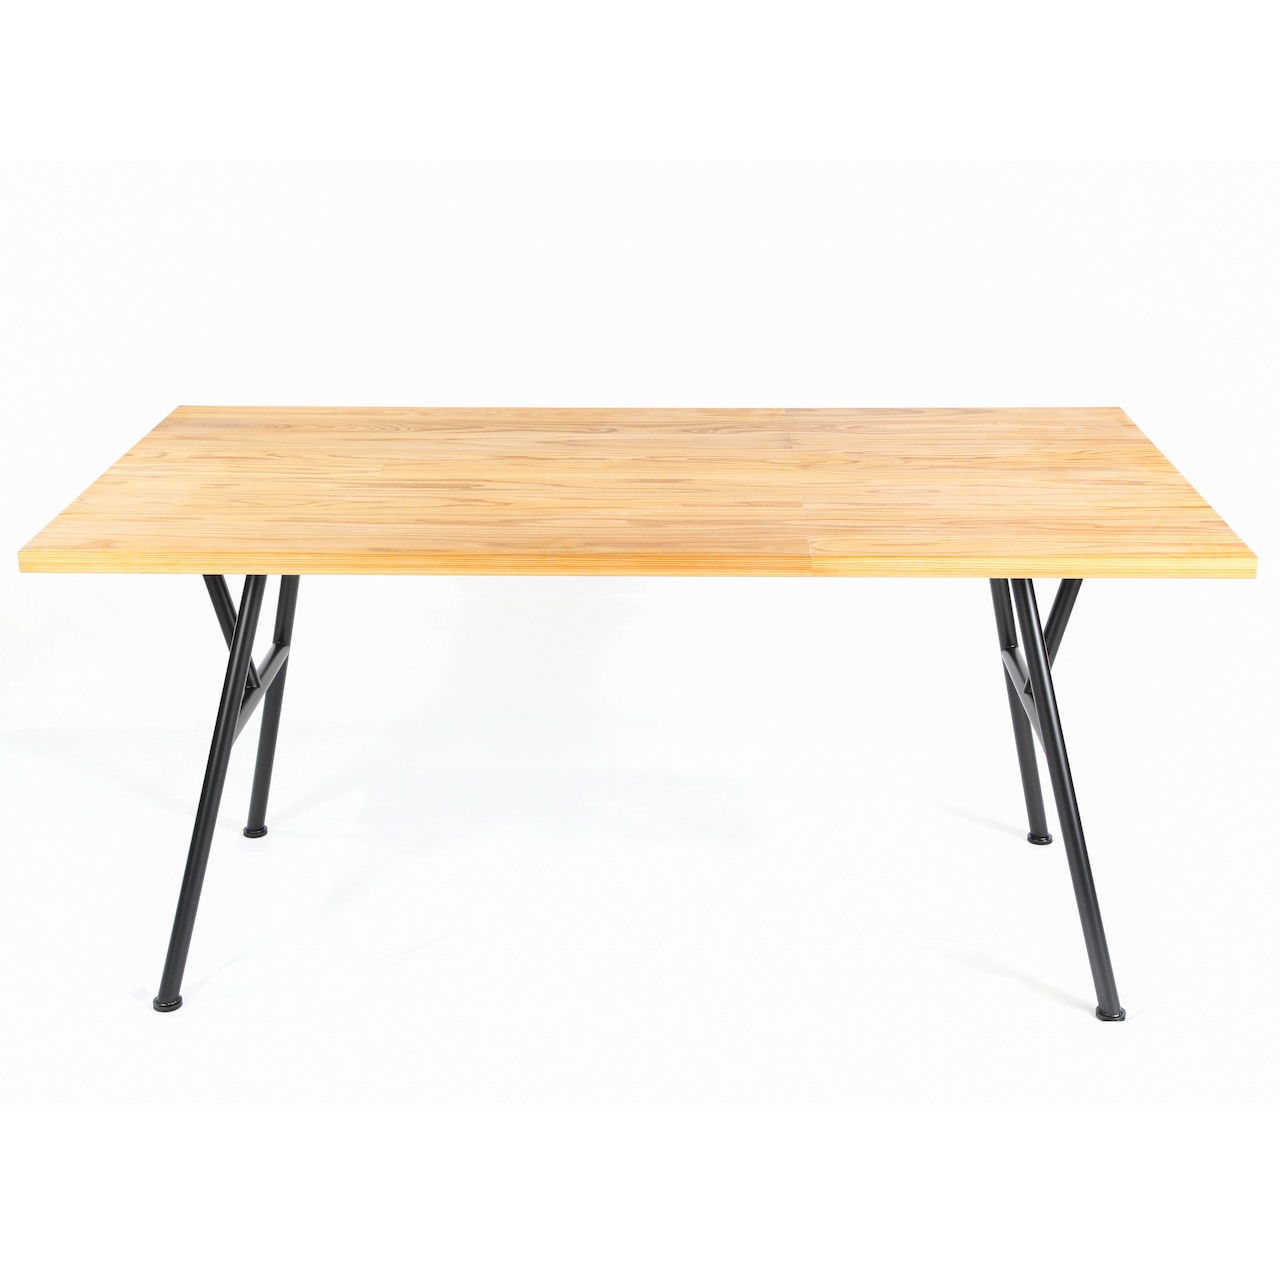 ダイニングテーブル / 杉 圧密材